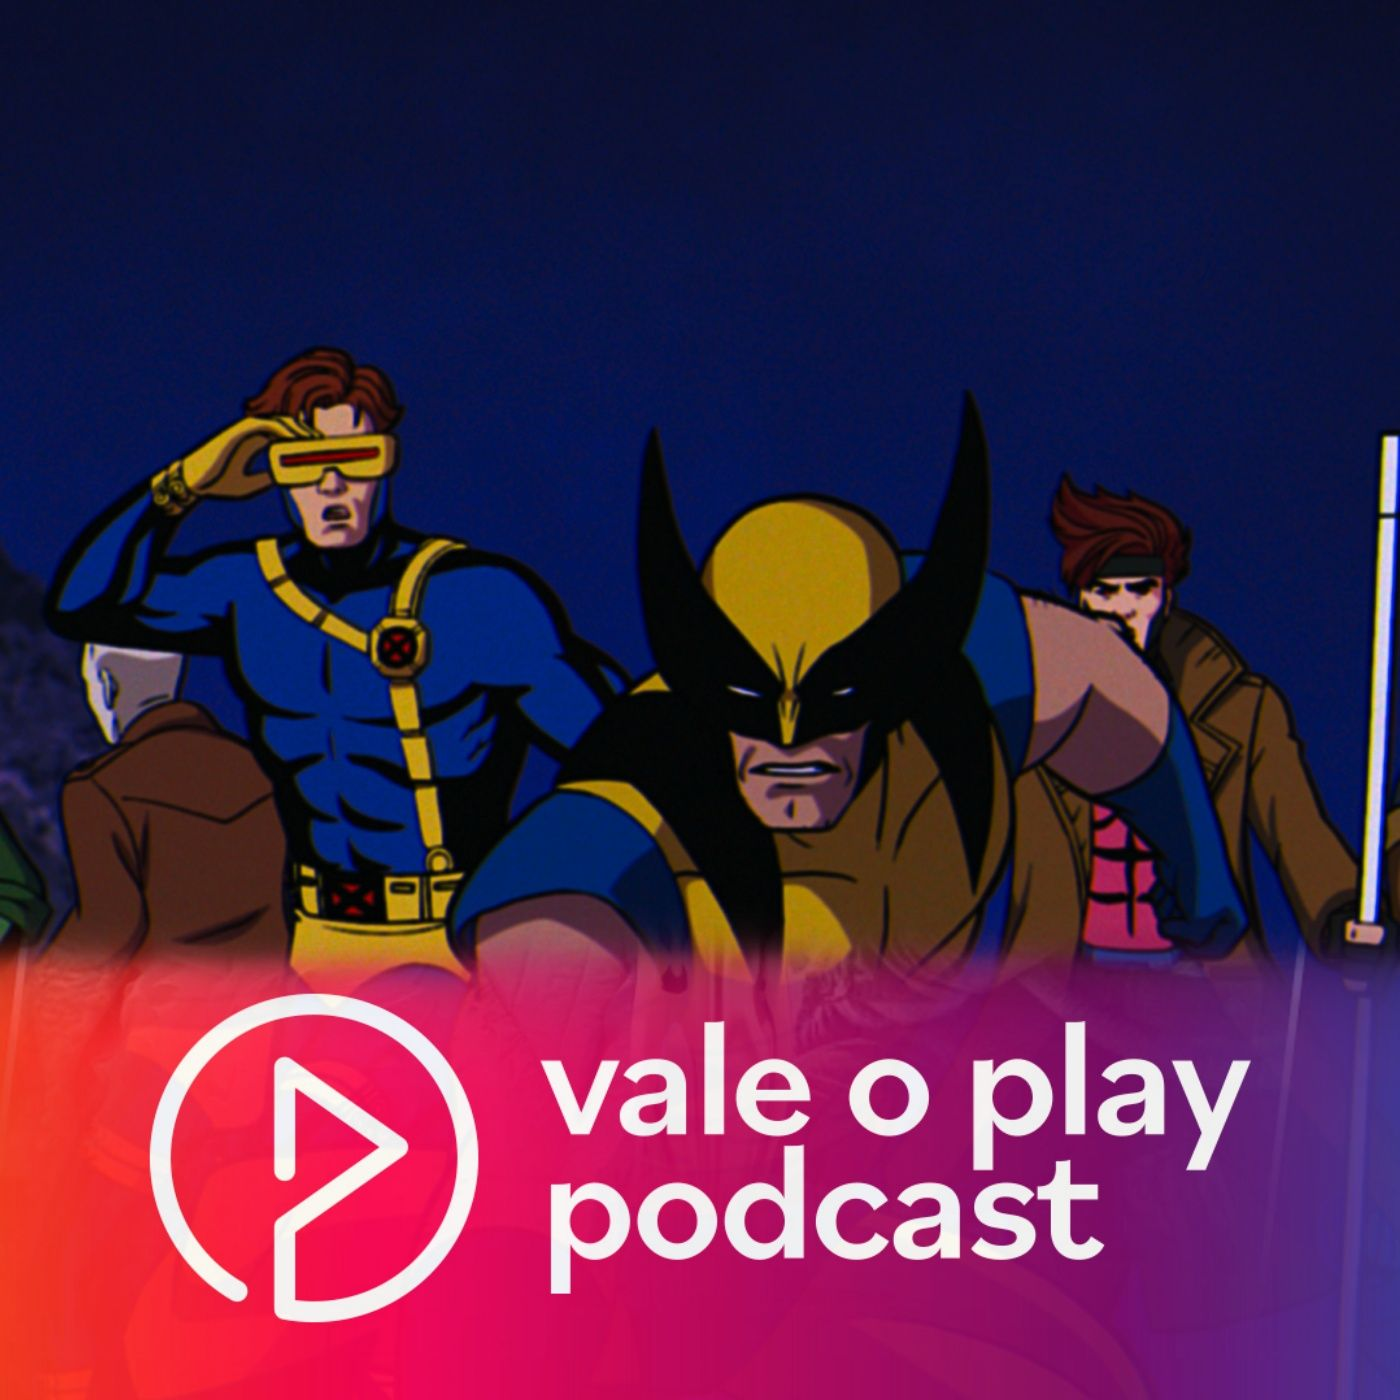 Vale o Play | X-Men '97 e a vitória do saudosismo barato